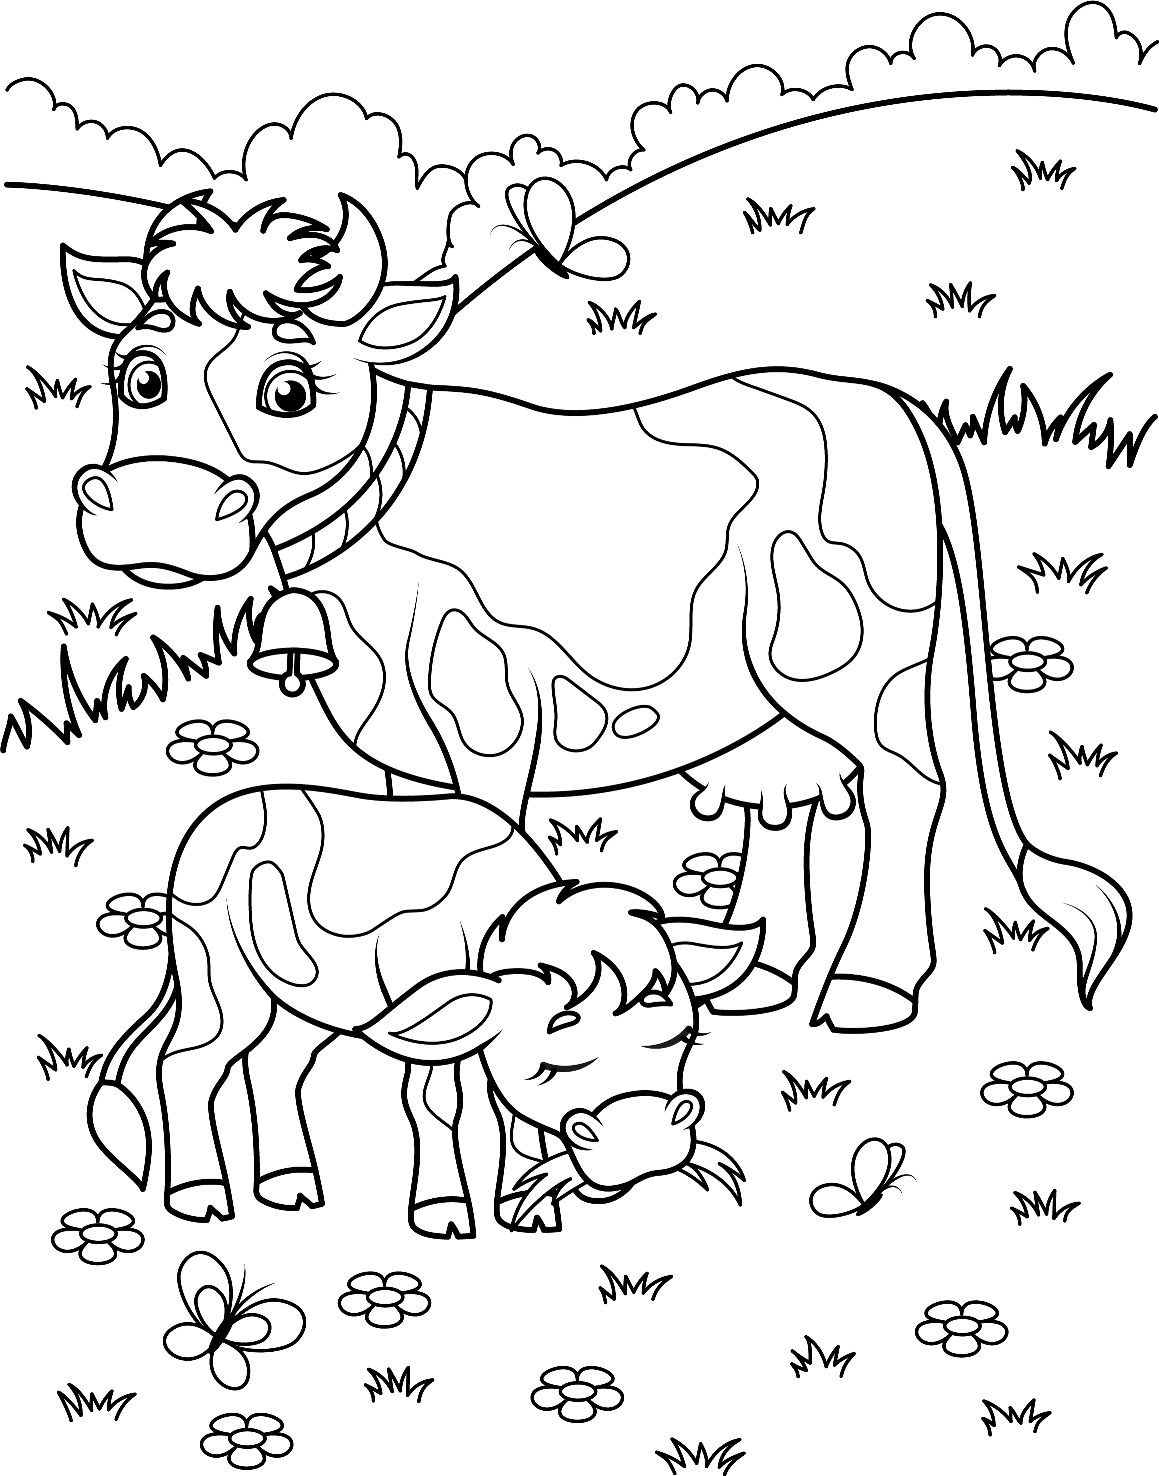 Раскраска 9785506048237 Оранжевая корова.С вырубкой в виде персонажа